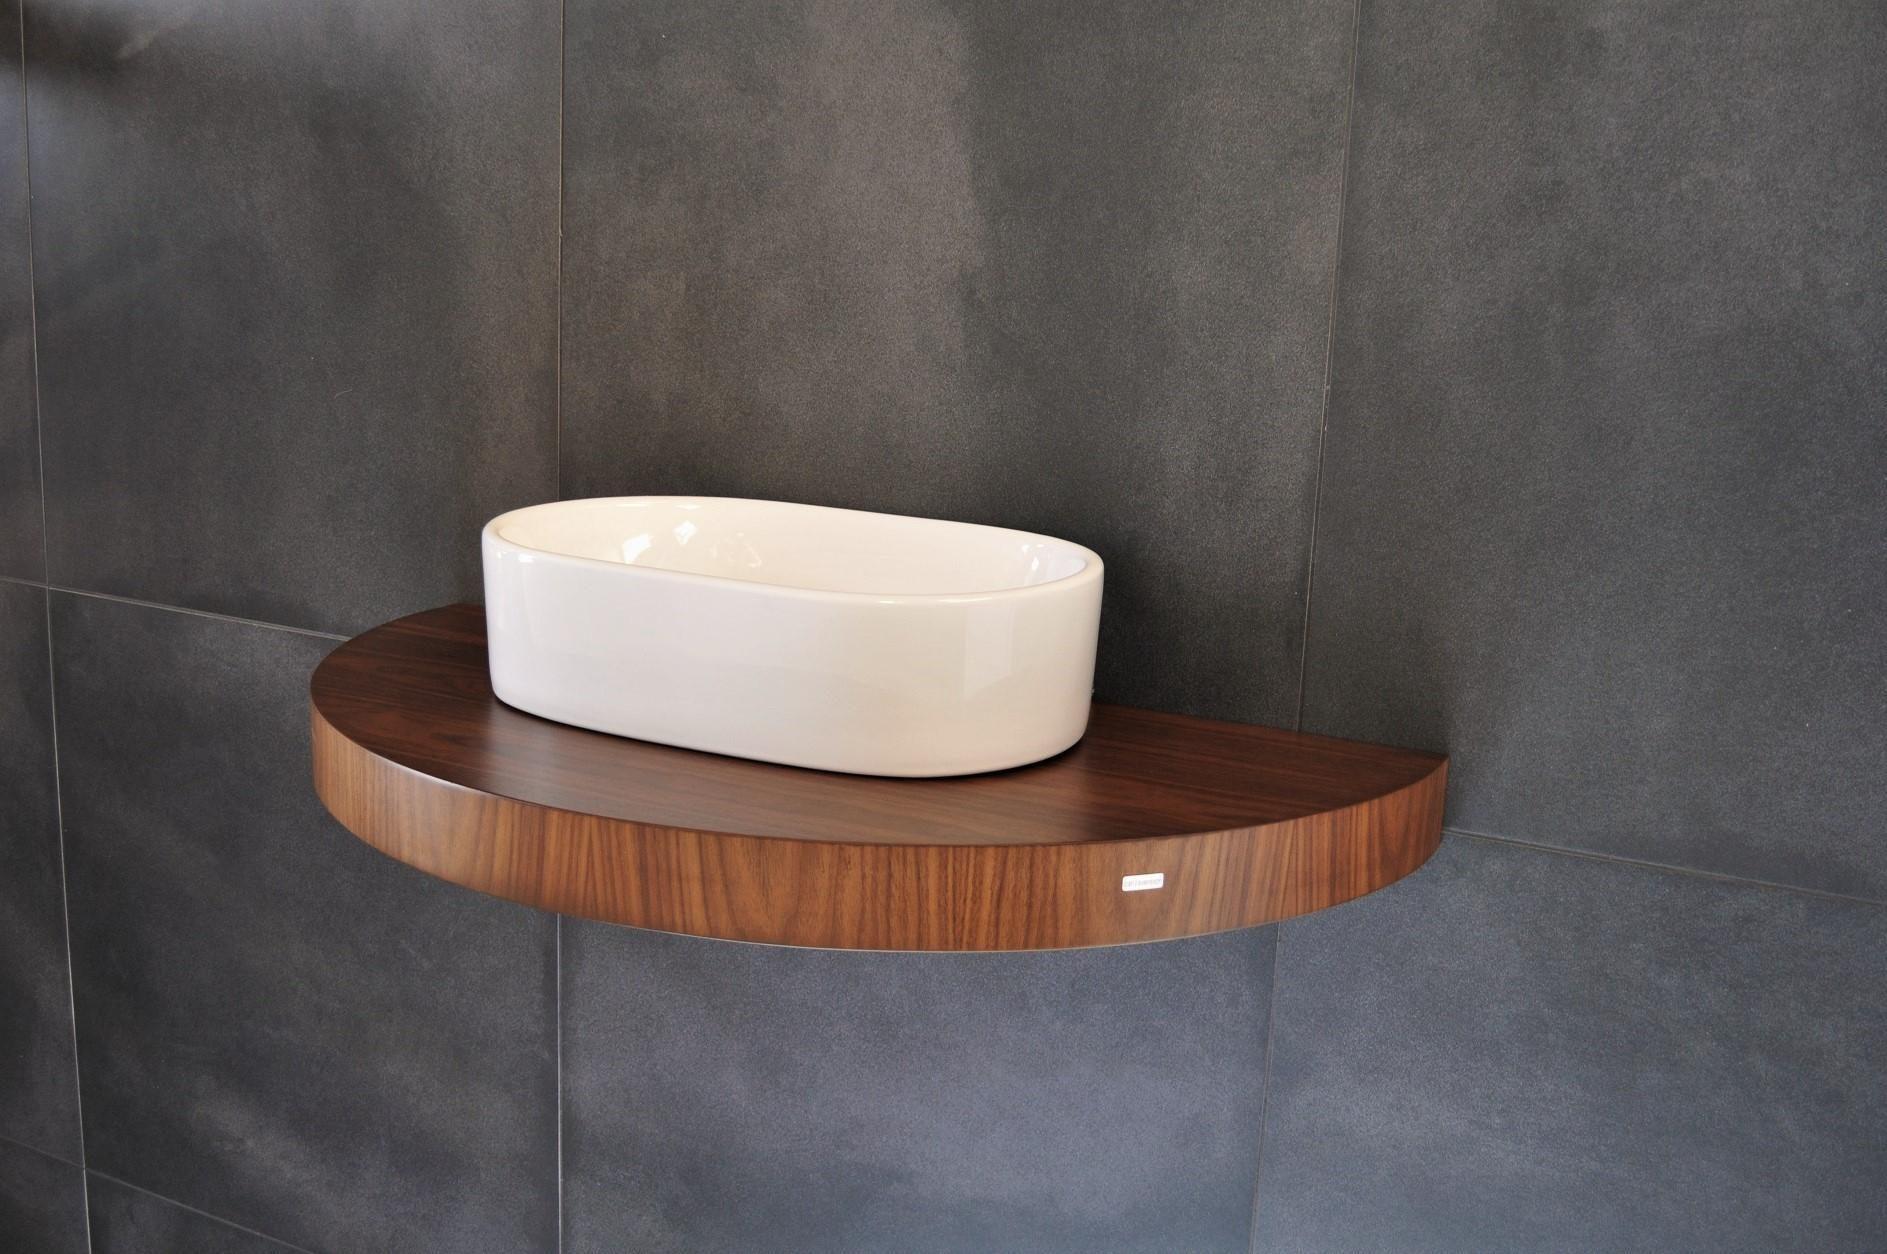 Eyecatcher für Ihr Badezimmer!

Ganz, unsere ovalen / abgerundeten / runden Waschtischplatten von Carl Svensson